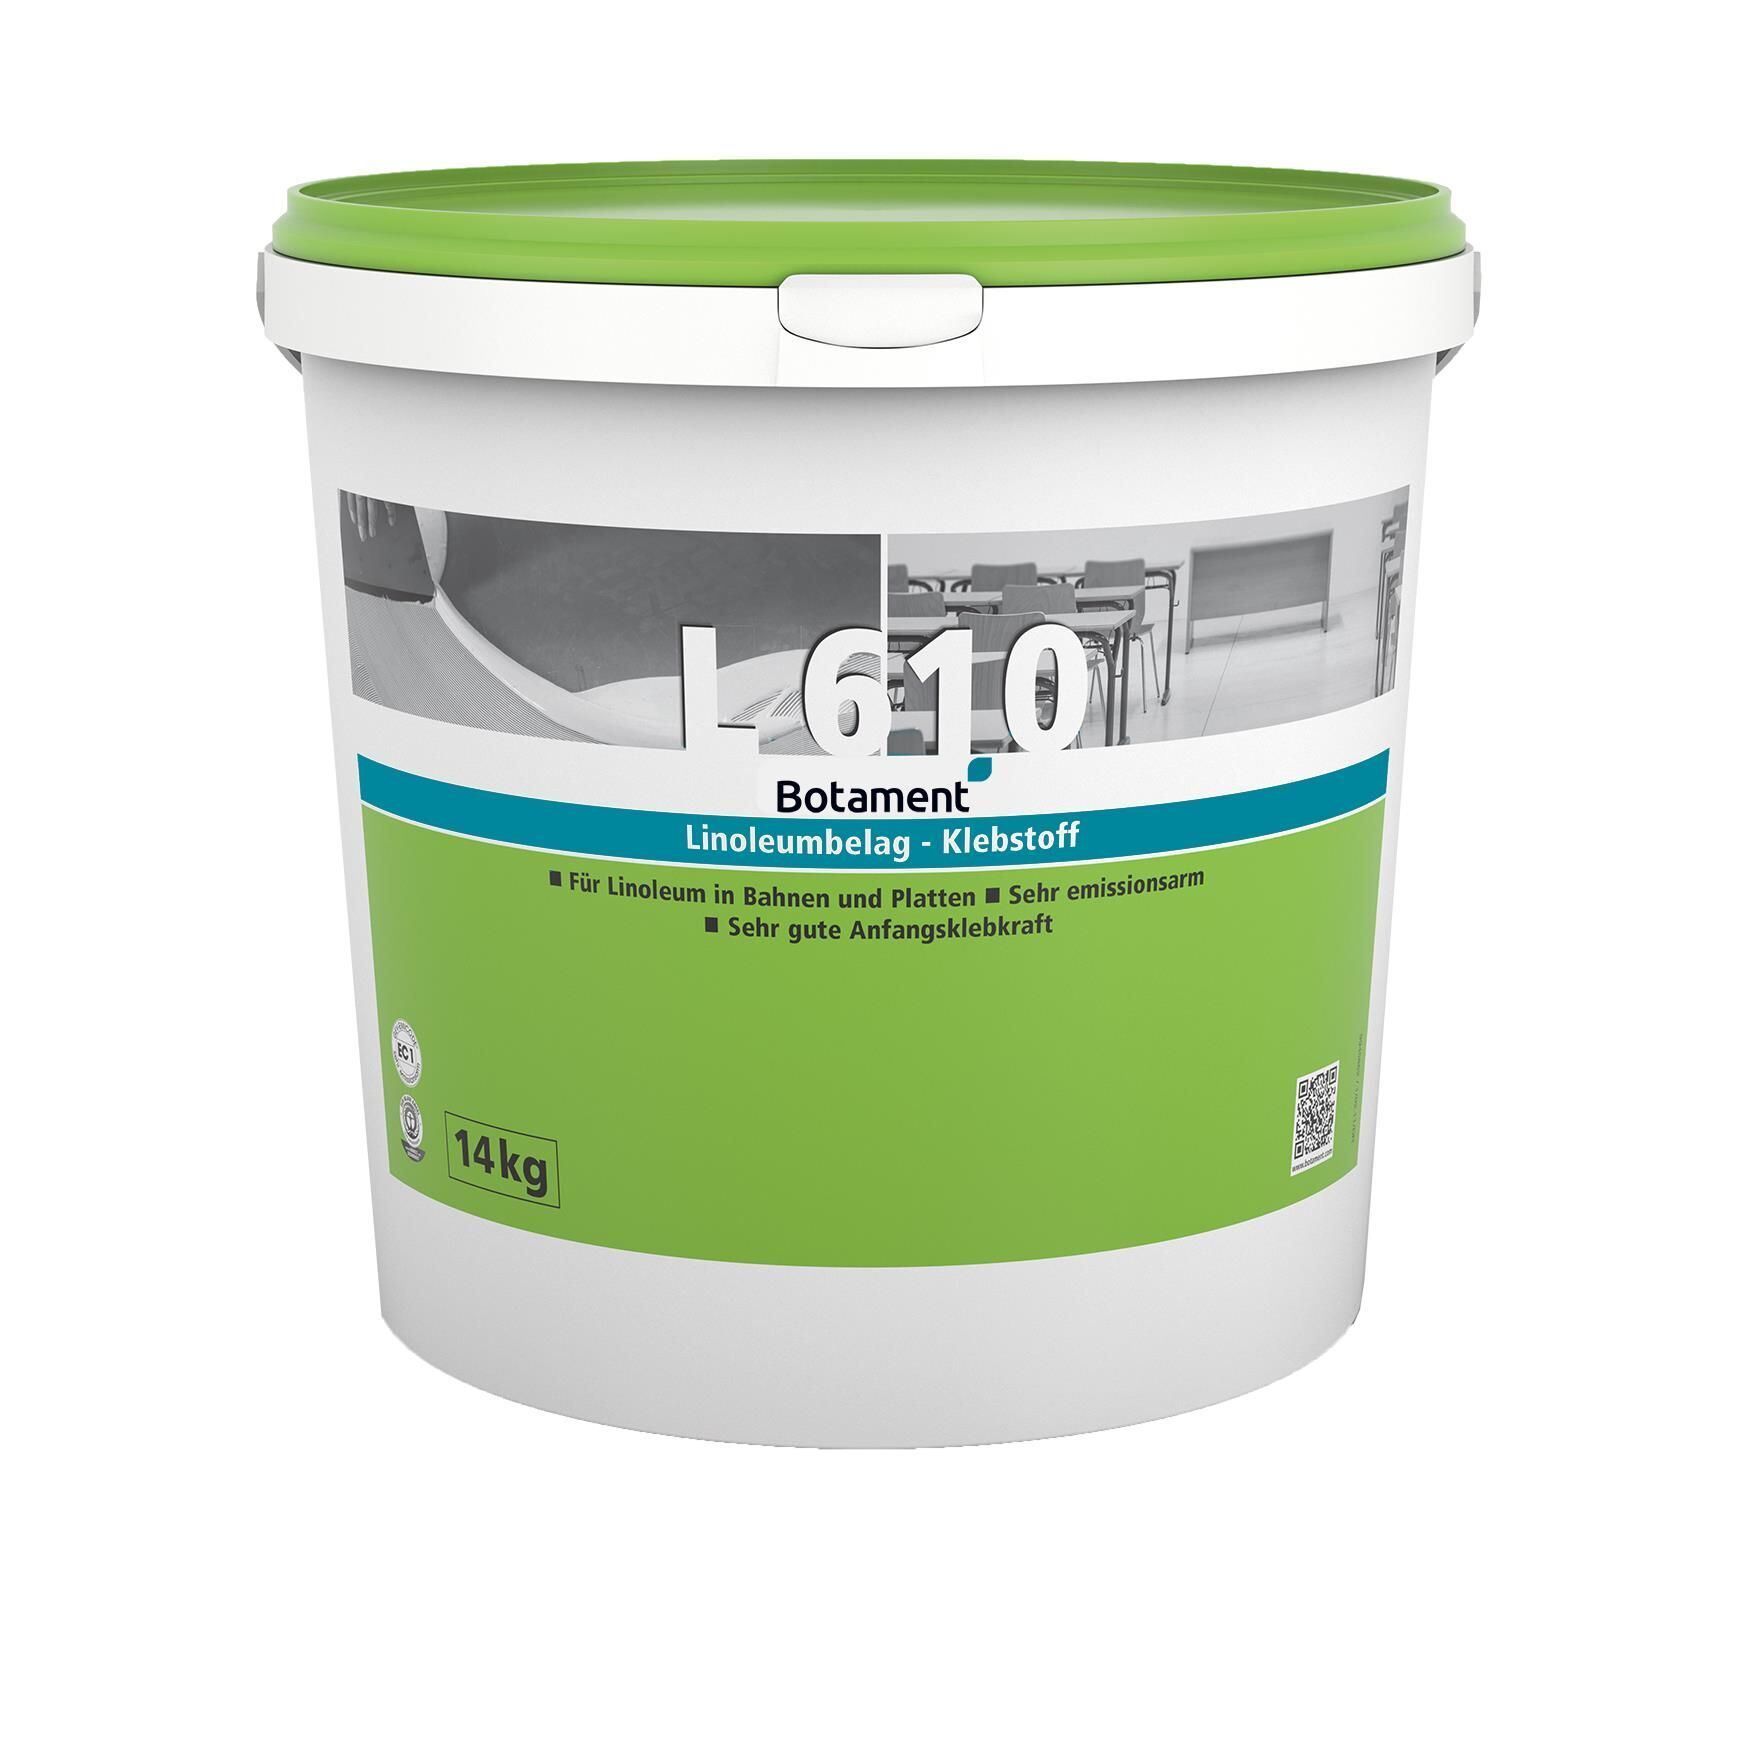 L 610 Linoleumbelag Klebstoff - 14 KG